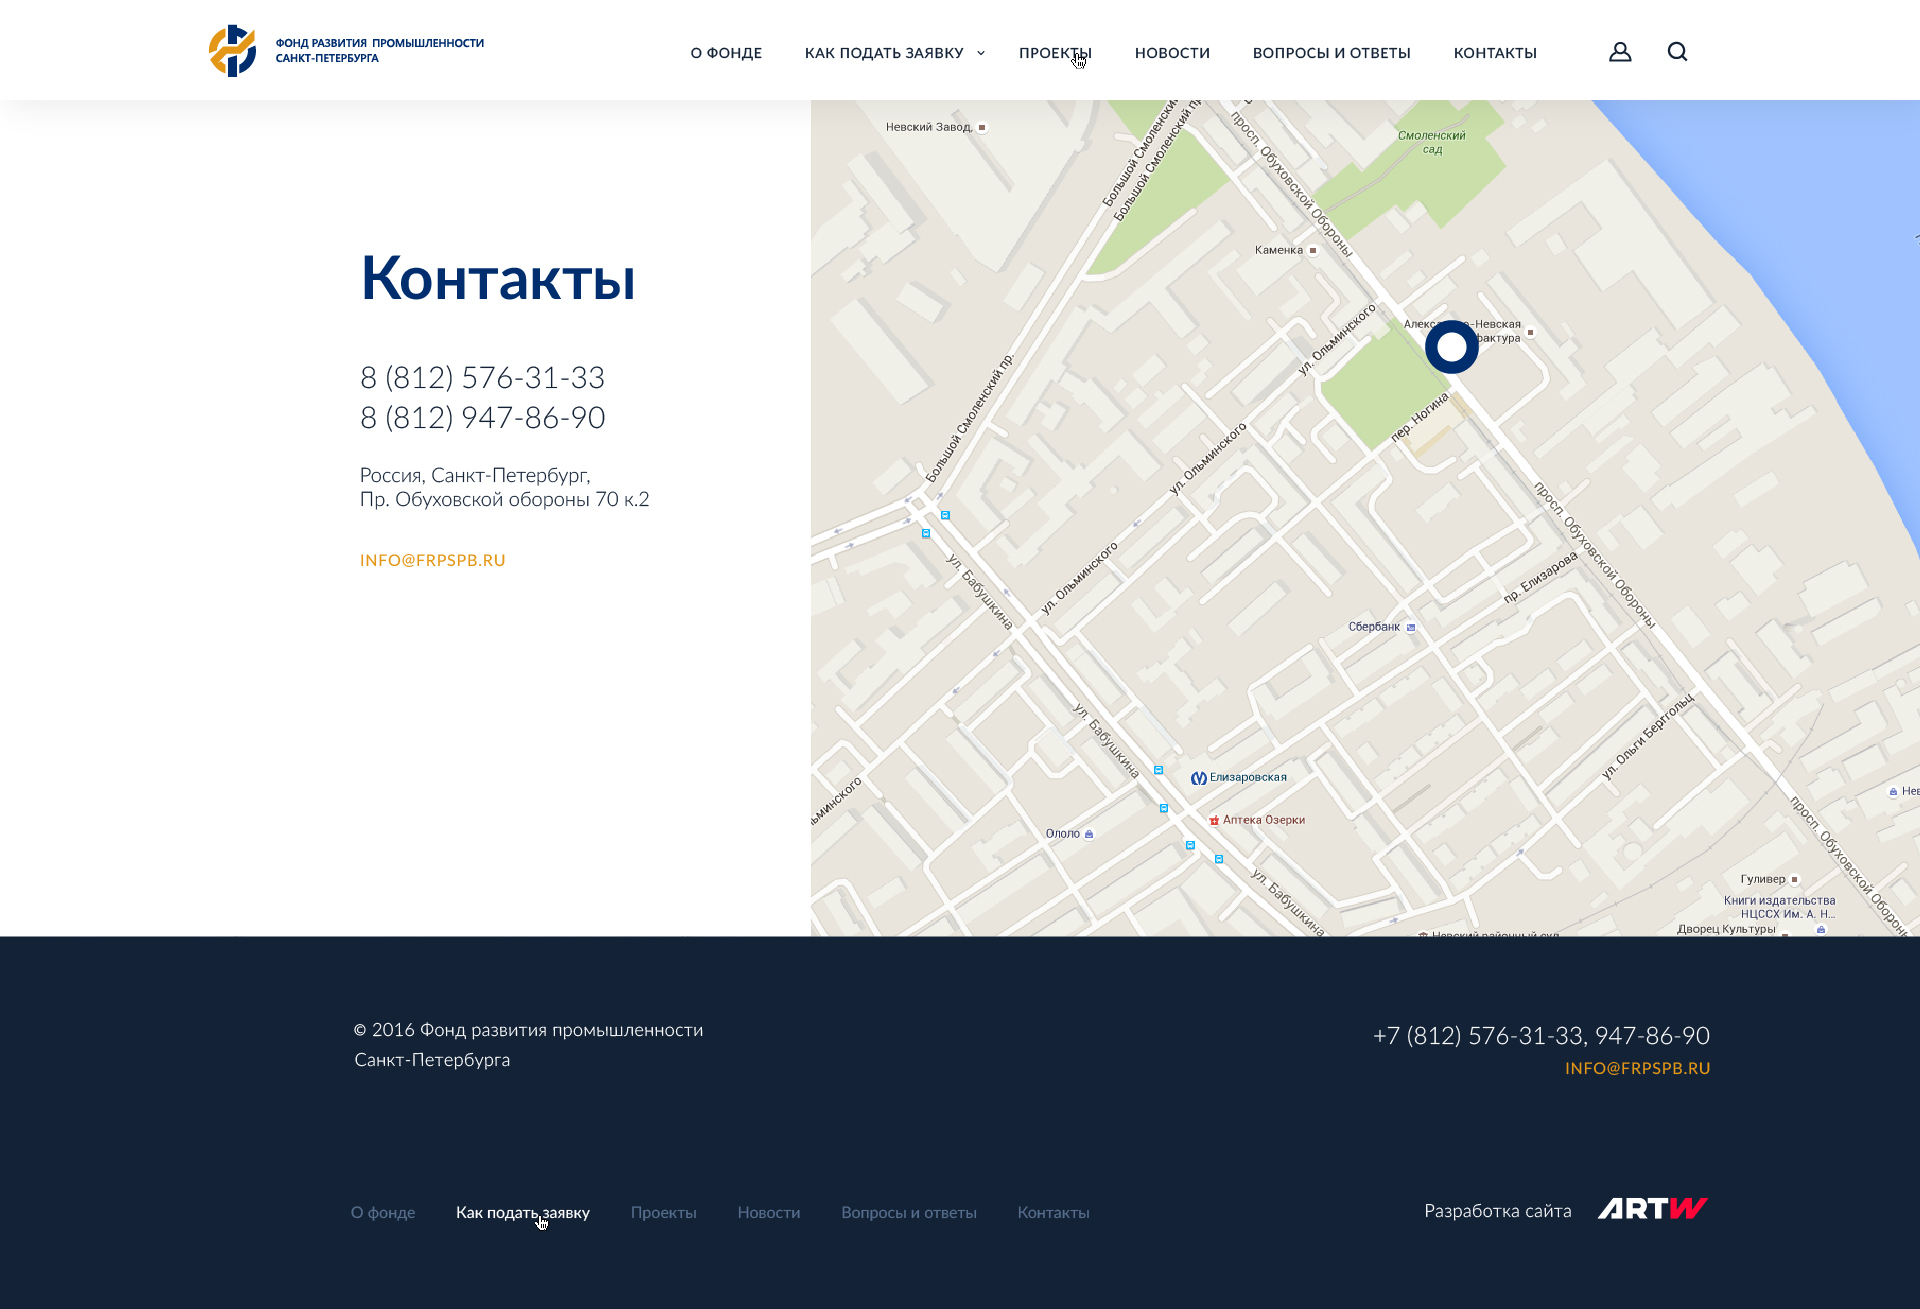 разработка корпоративного сайта фонда развития промышленности санкт-петербурга